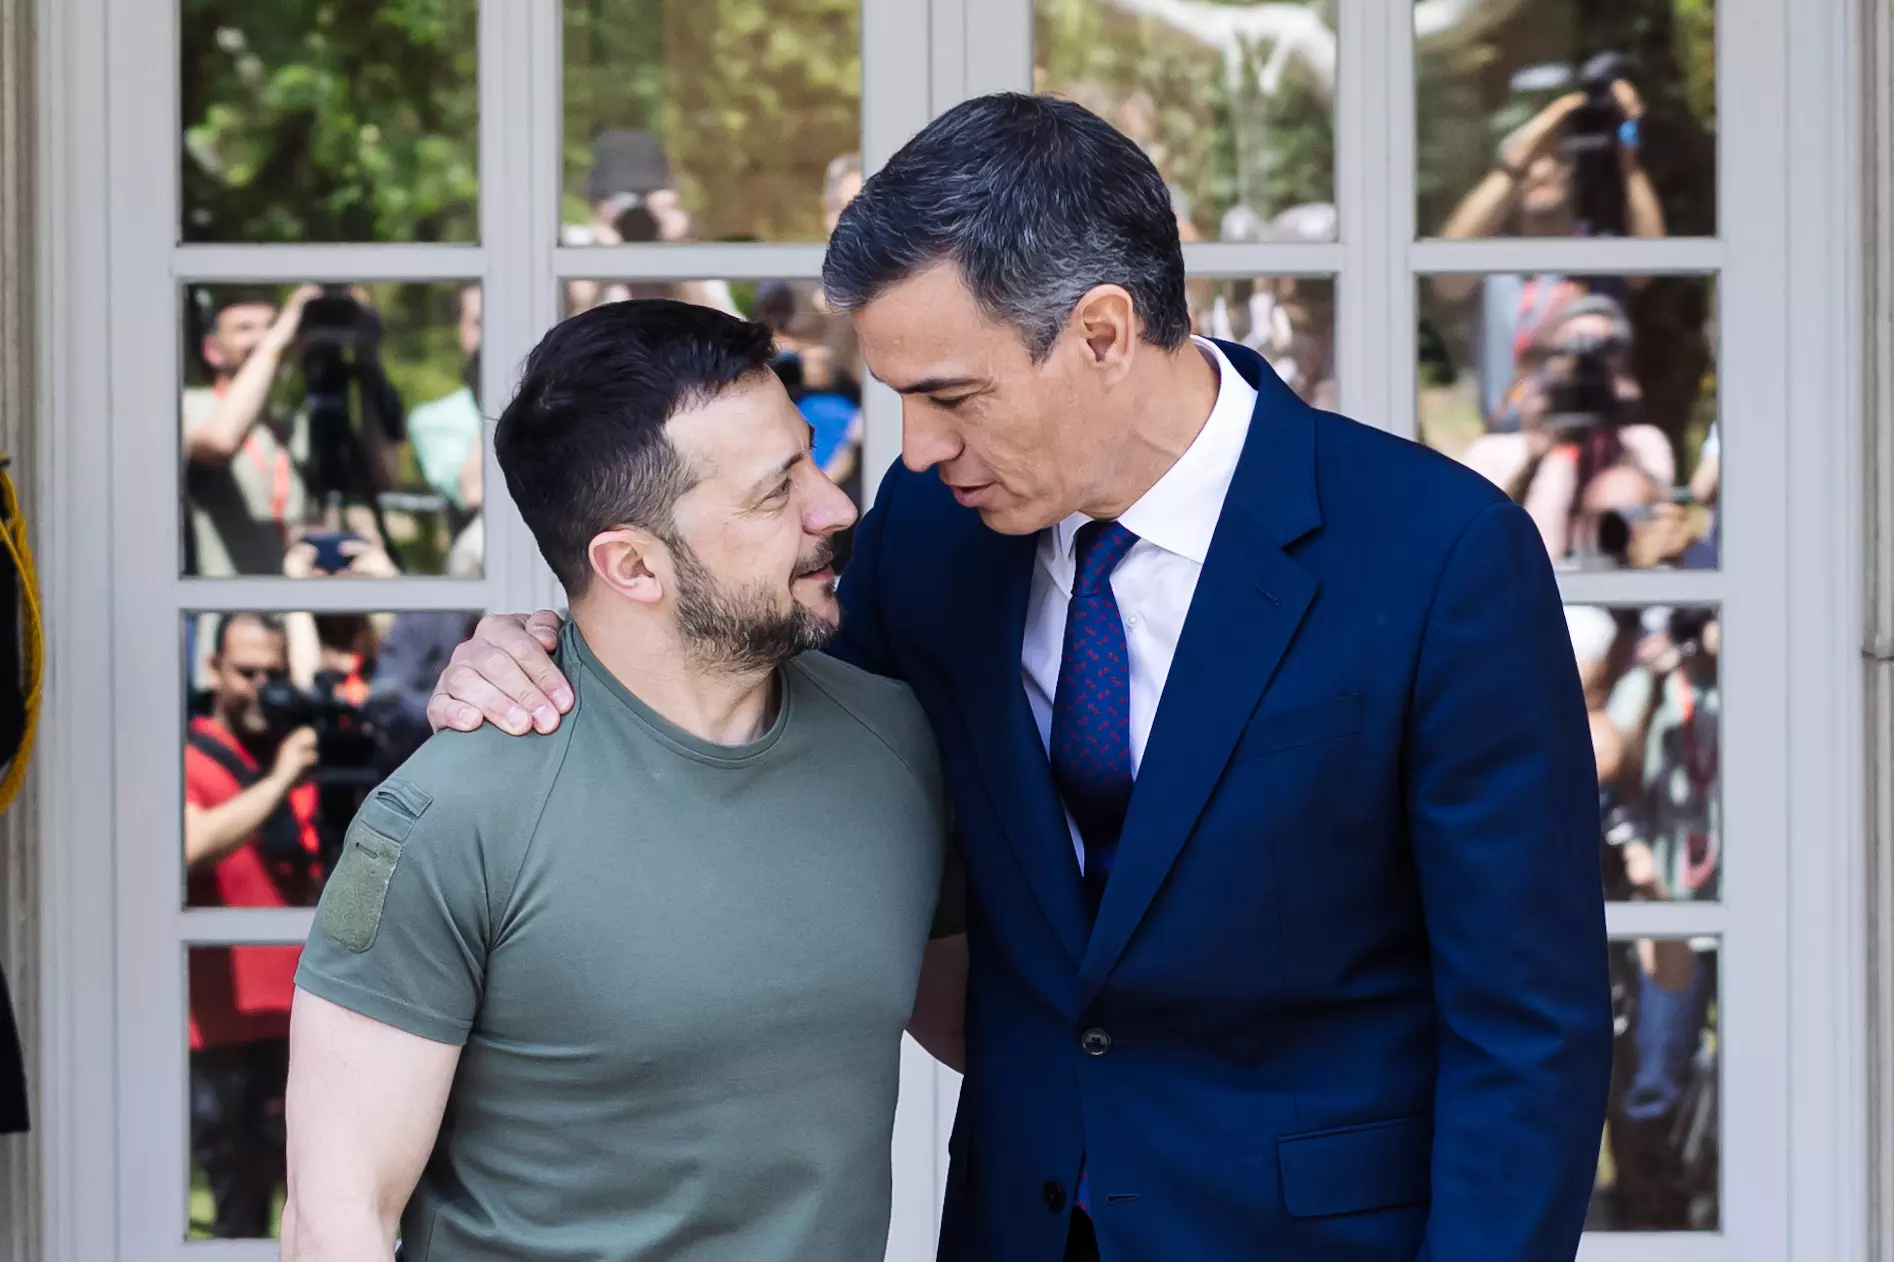 Pedro Sánchez y Volodimir Zelenski, durante su encuentro en La Moncloa la mañana de este lunes, 27 de mayo. — Carlos Luján / Europa Press